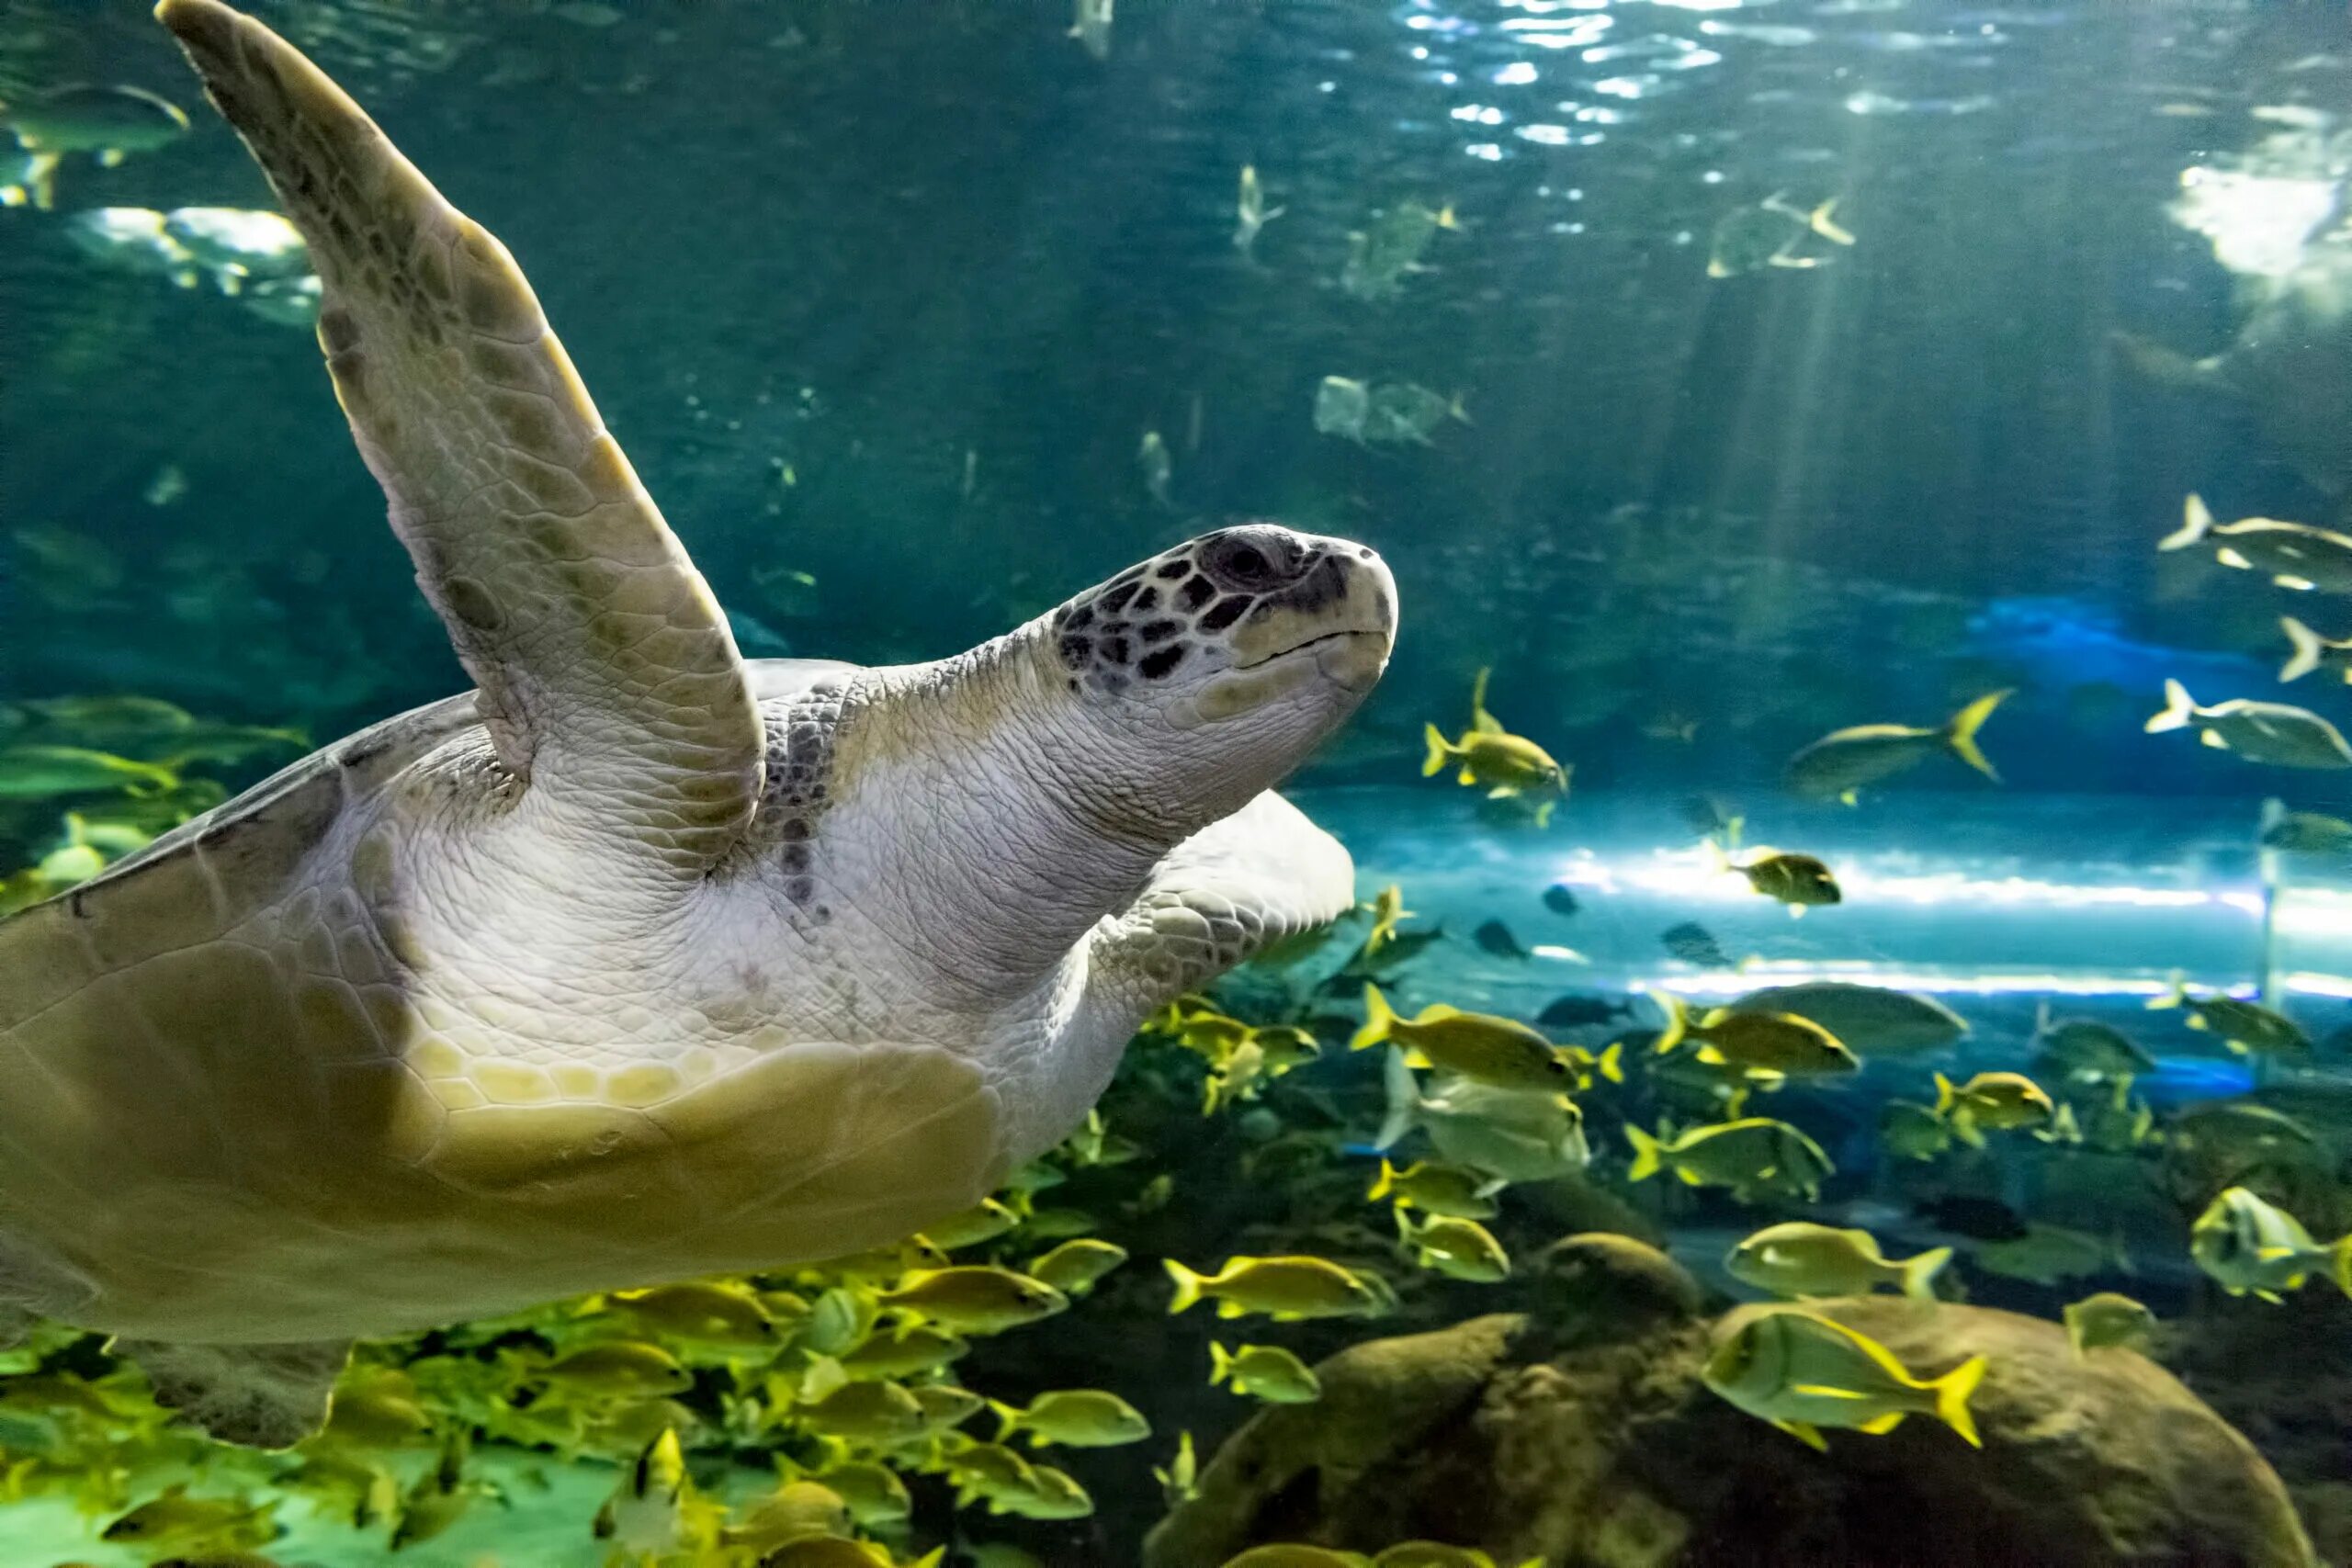 Turtle rise. Морская черепаха в аквариуме. Канадский аквариум Рипли. Turtles in Canada.